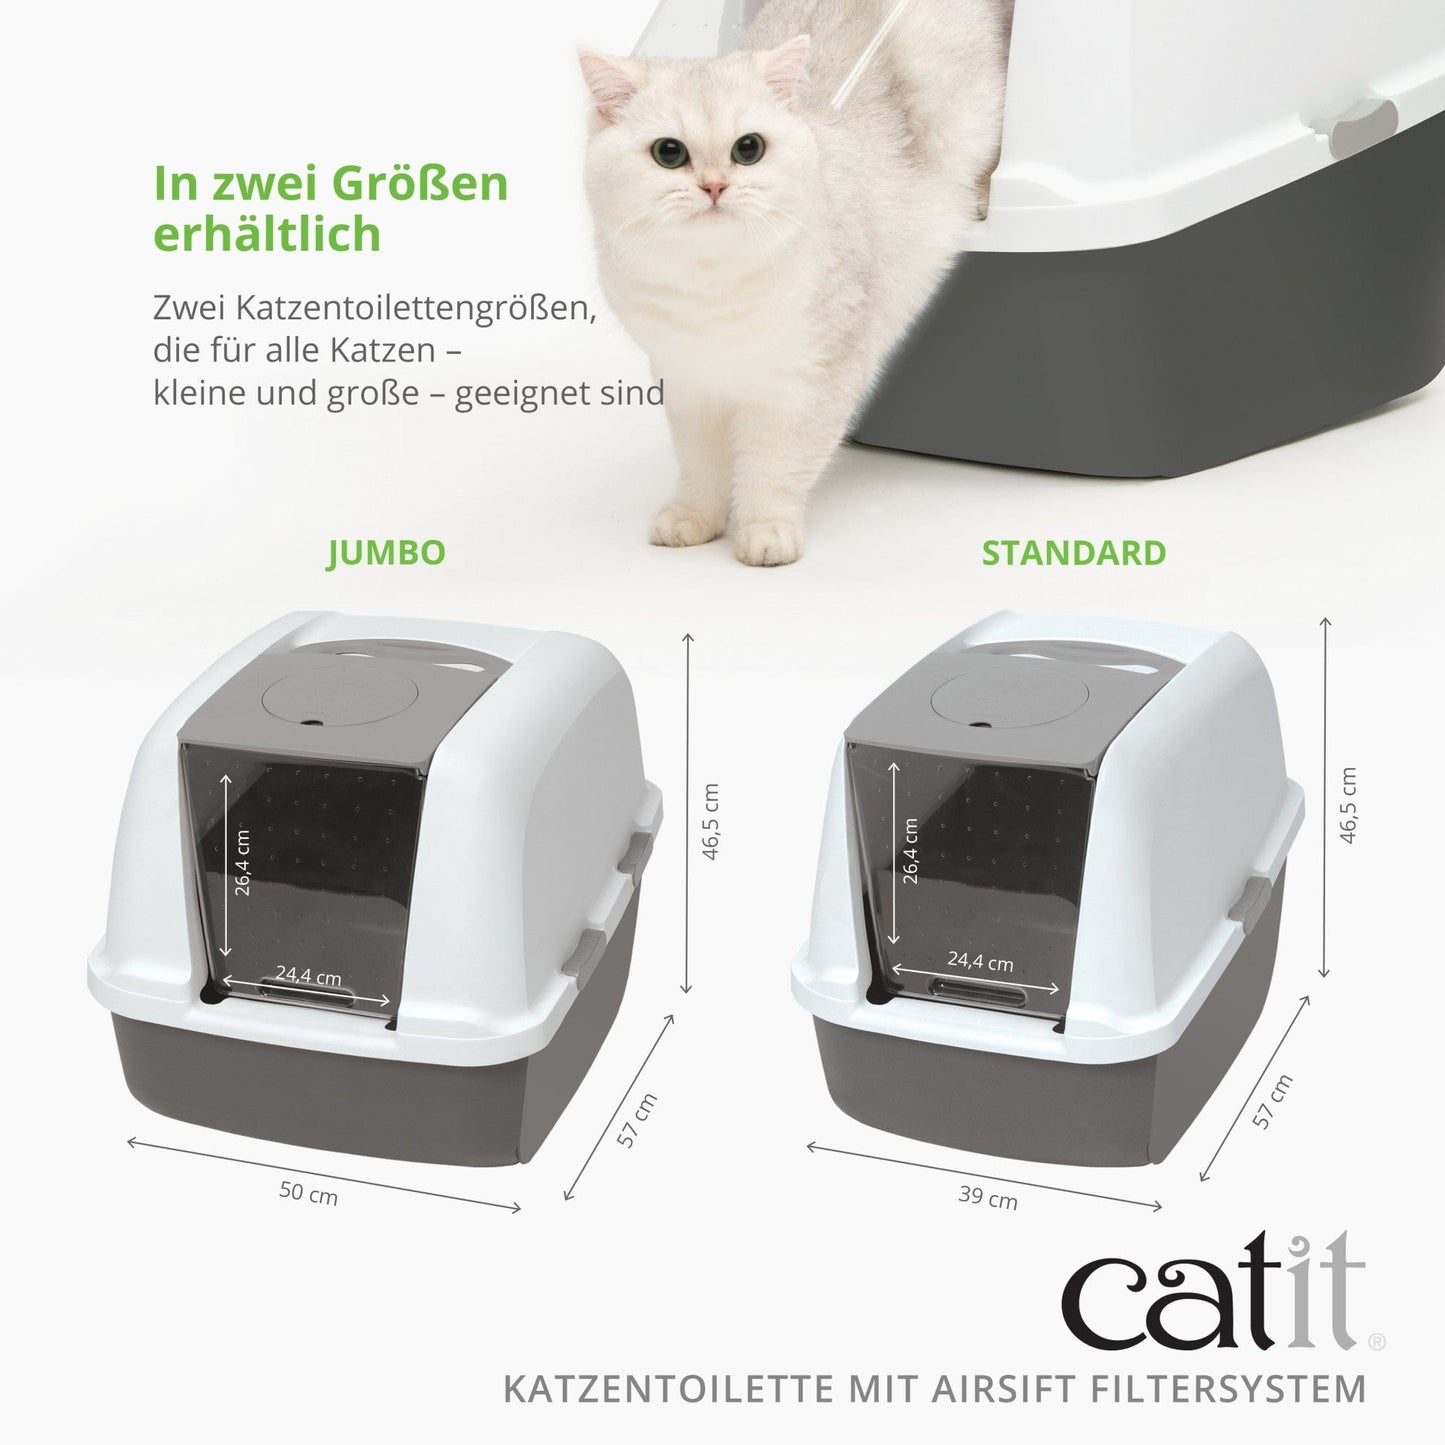 Catit Katzentoilette mit Dach und Airsift-Filtersystem - Jumbo